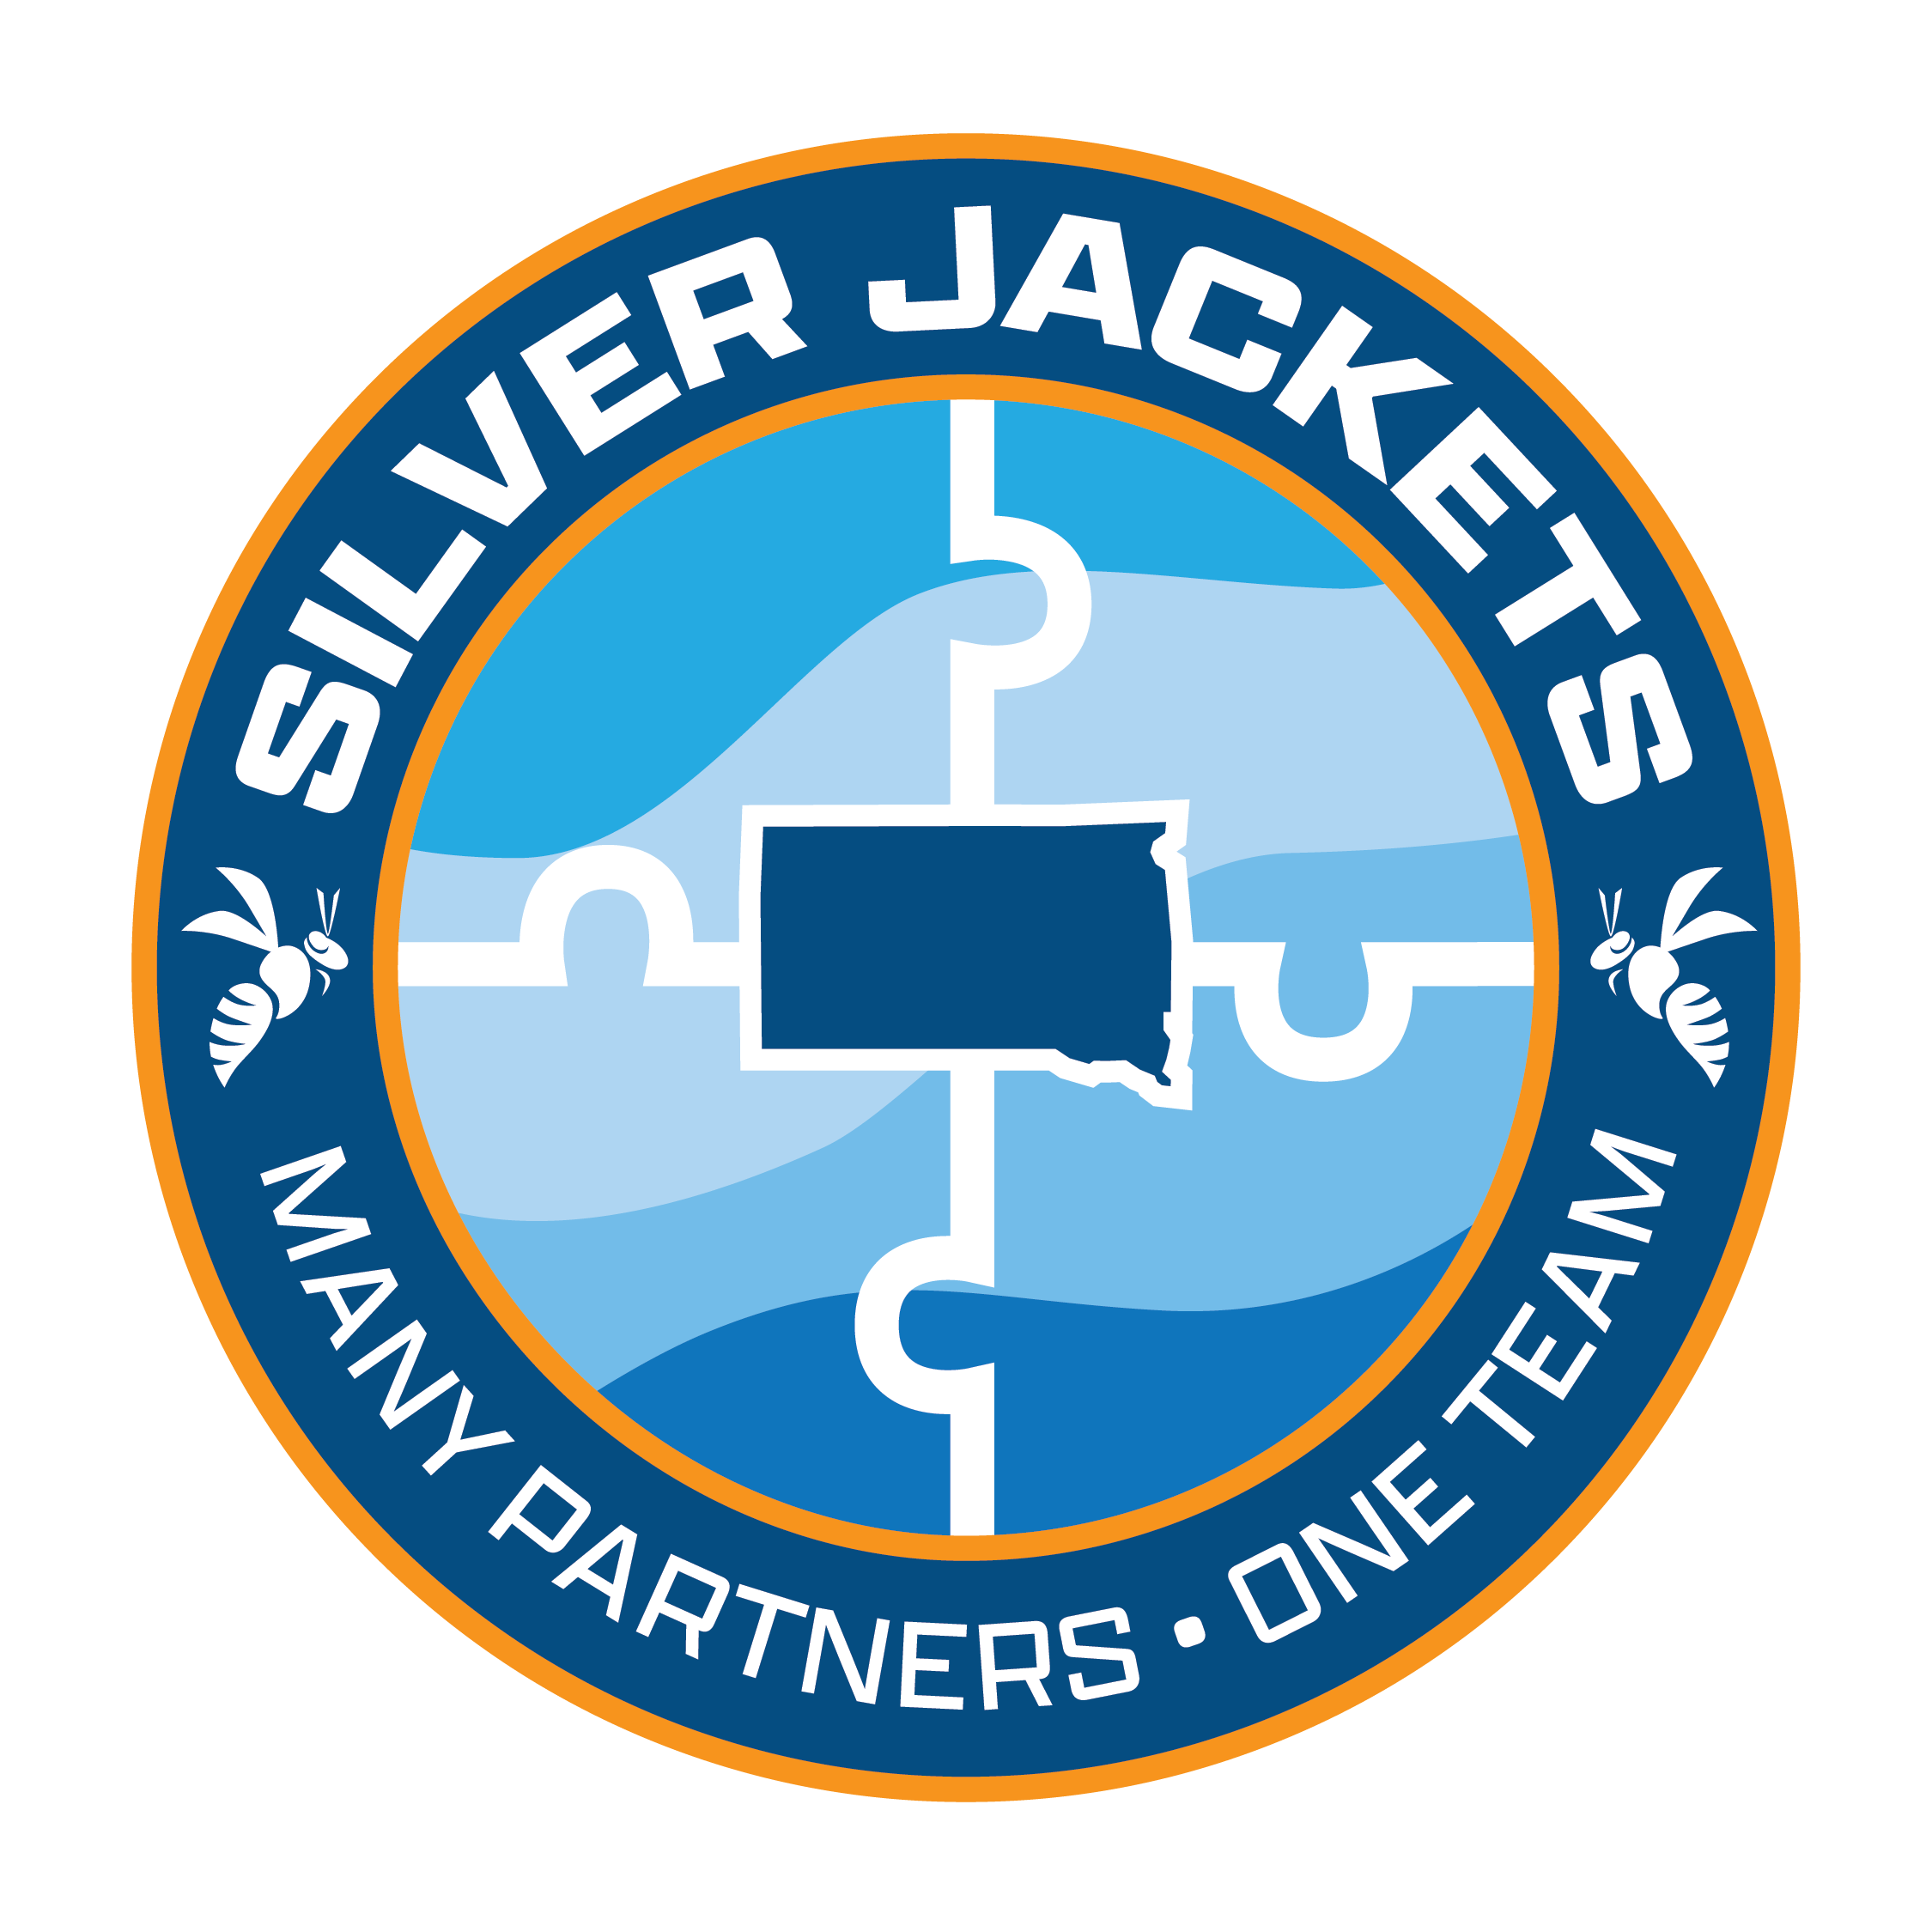 South Dakota Silver Jackets logo